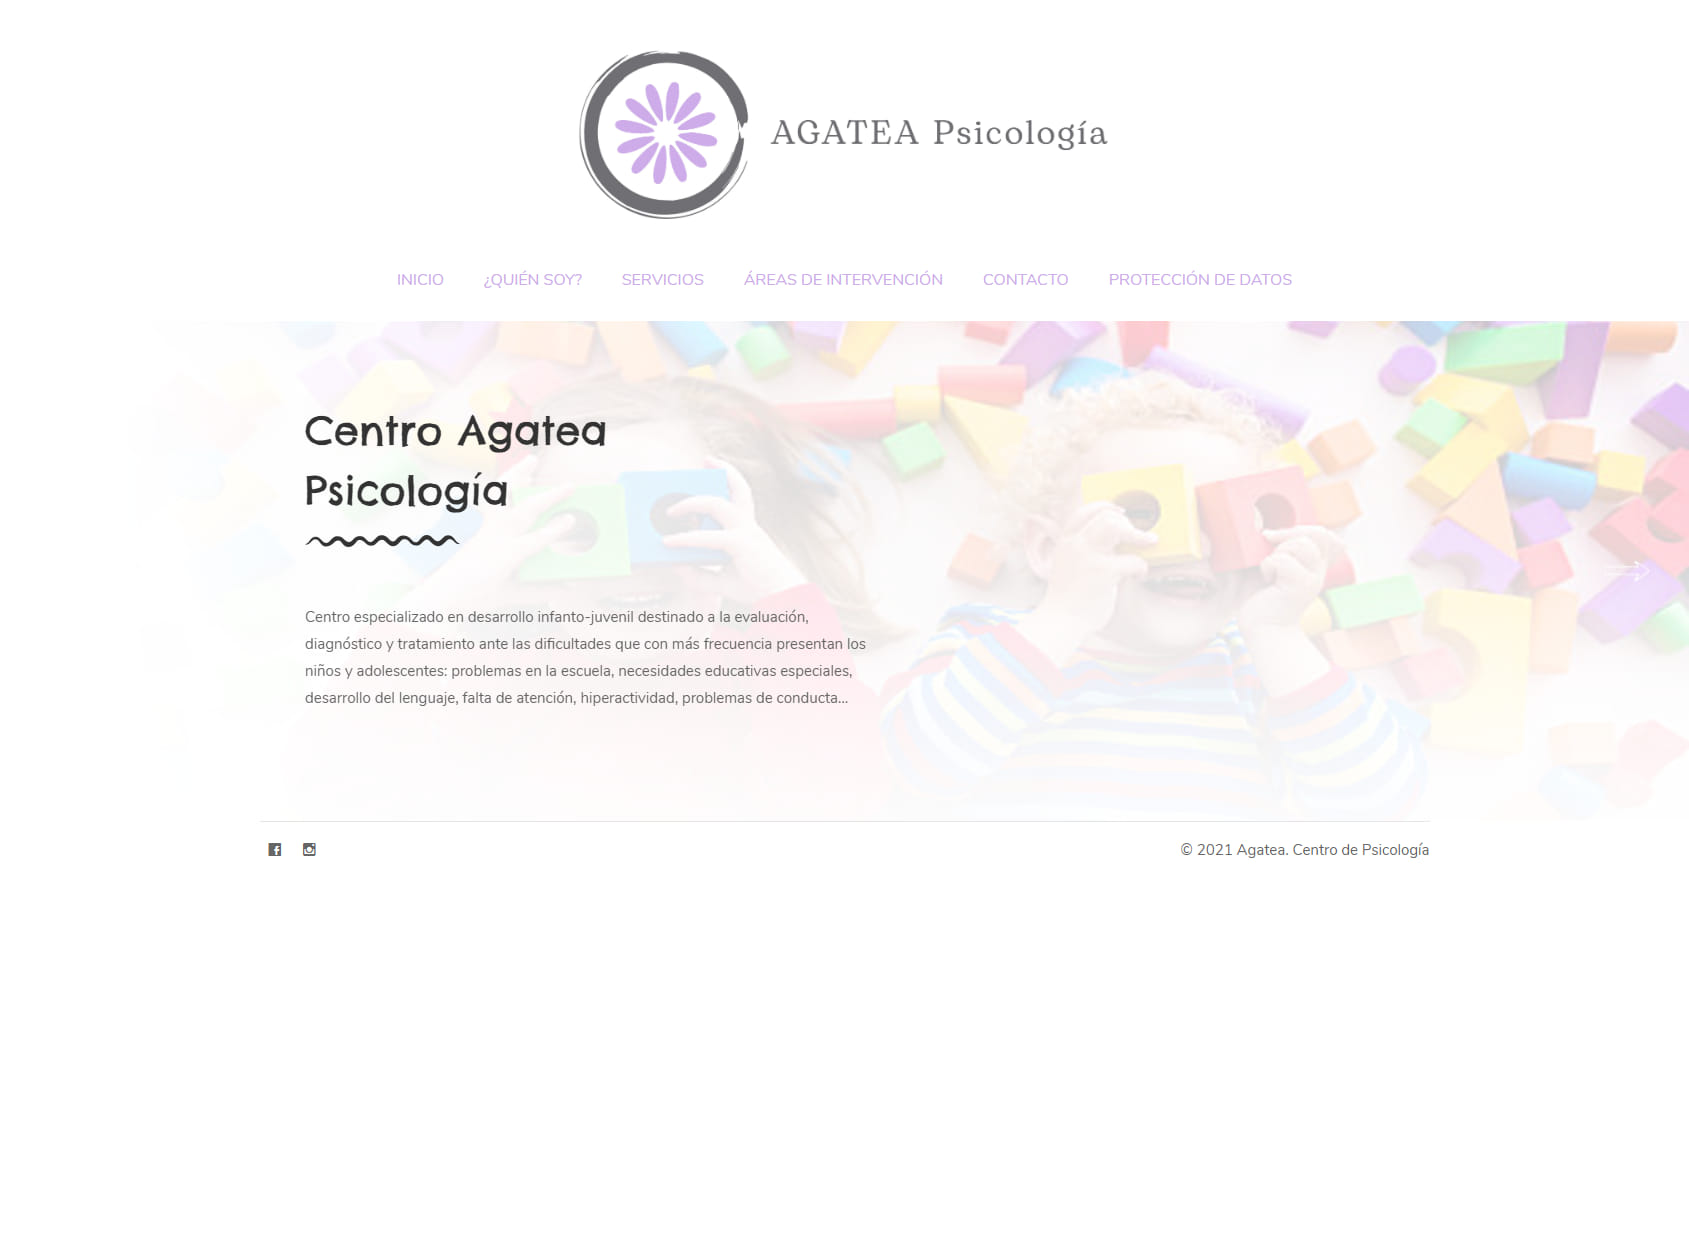 Agatea Psicología